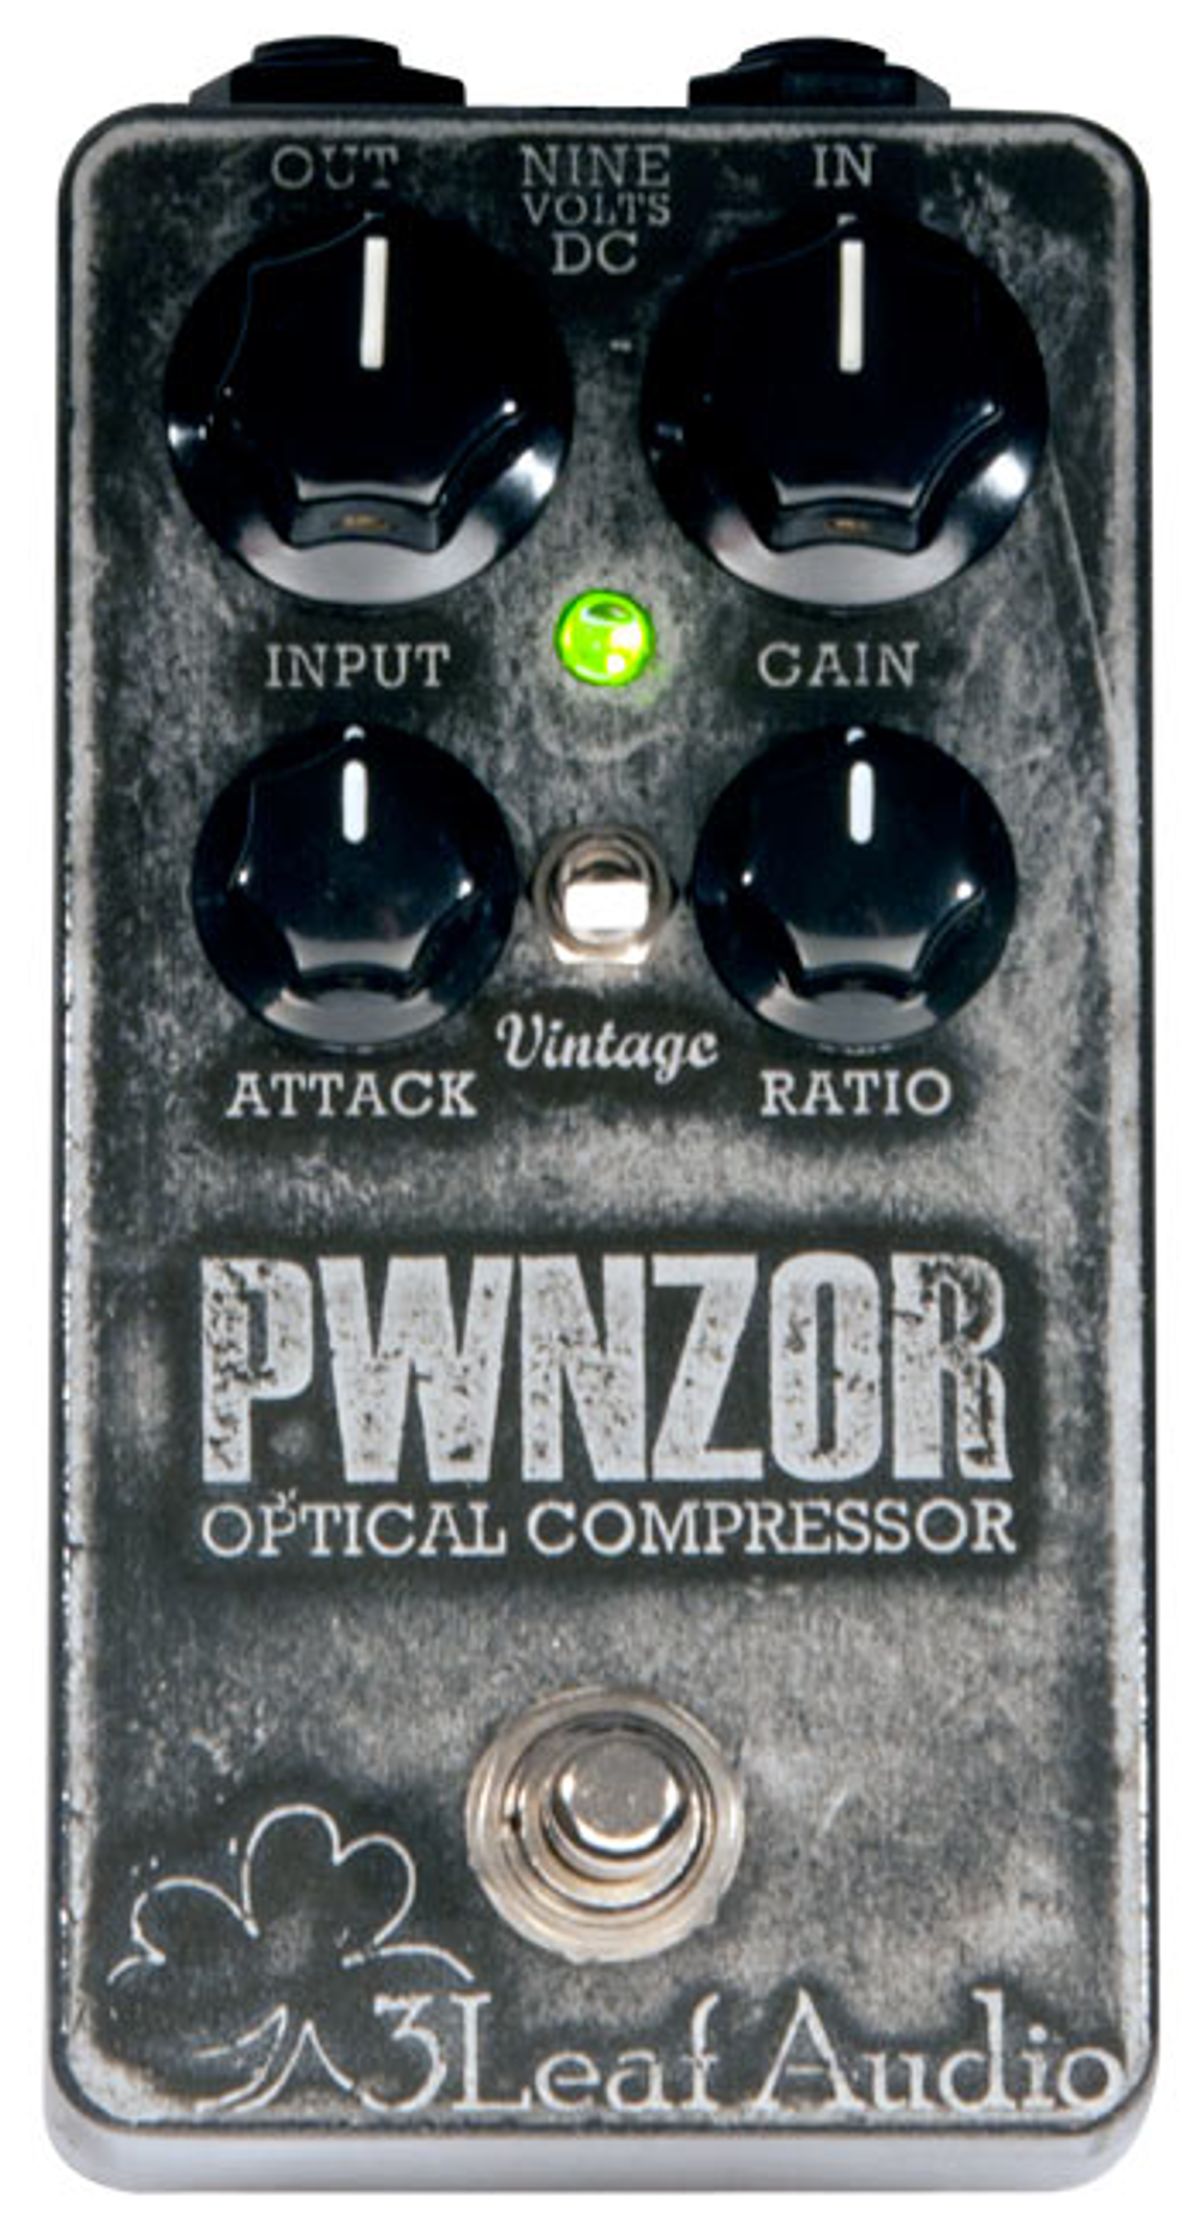 3Leaf Audio PWNZOR Bass Compressor Review